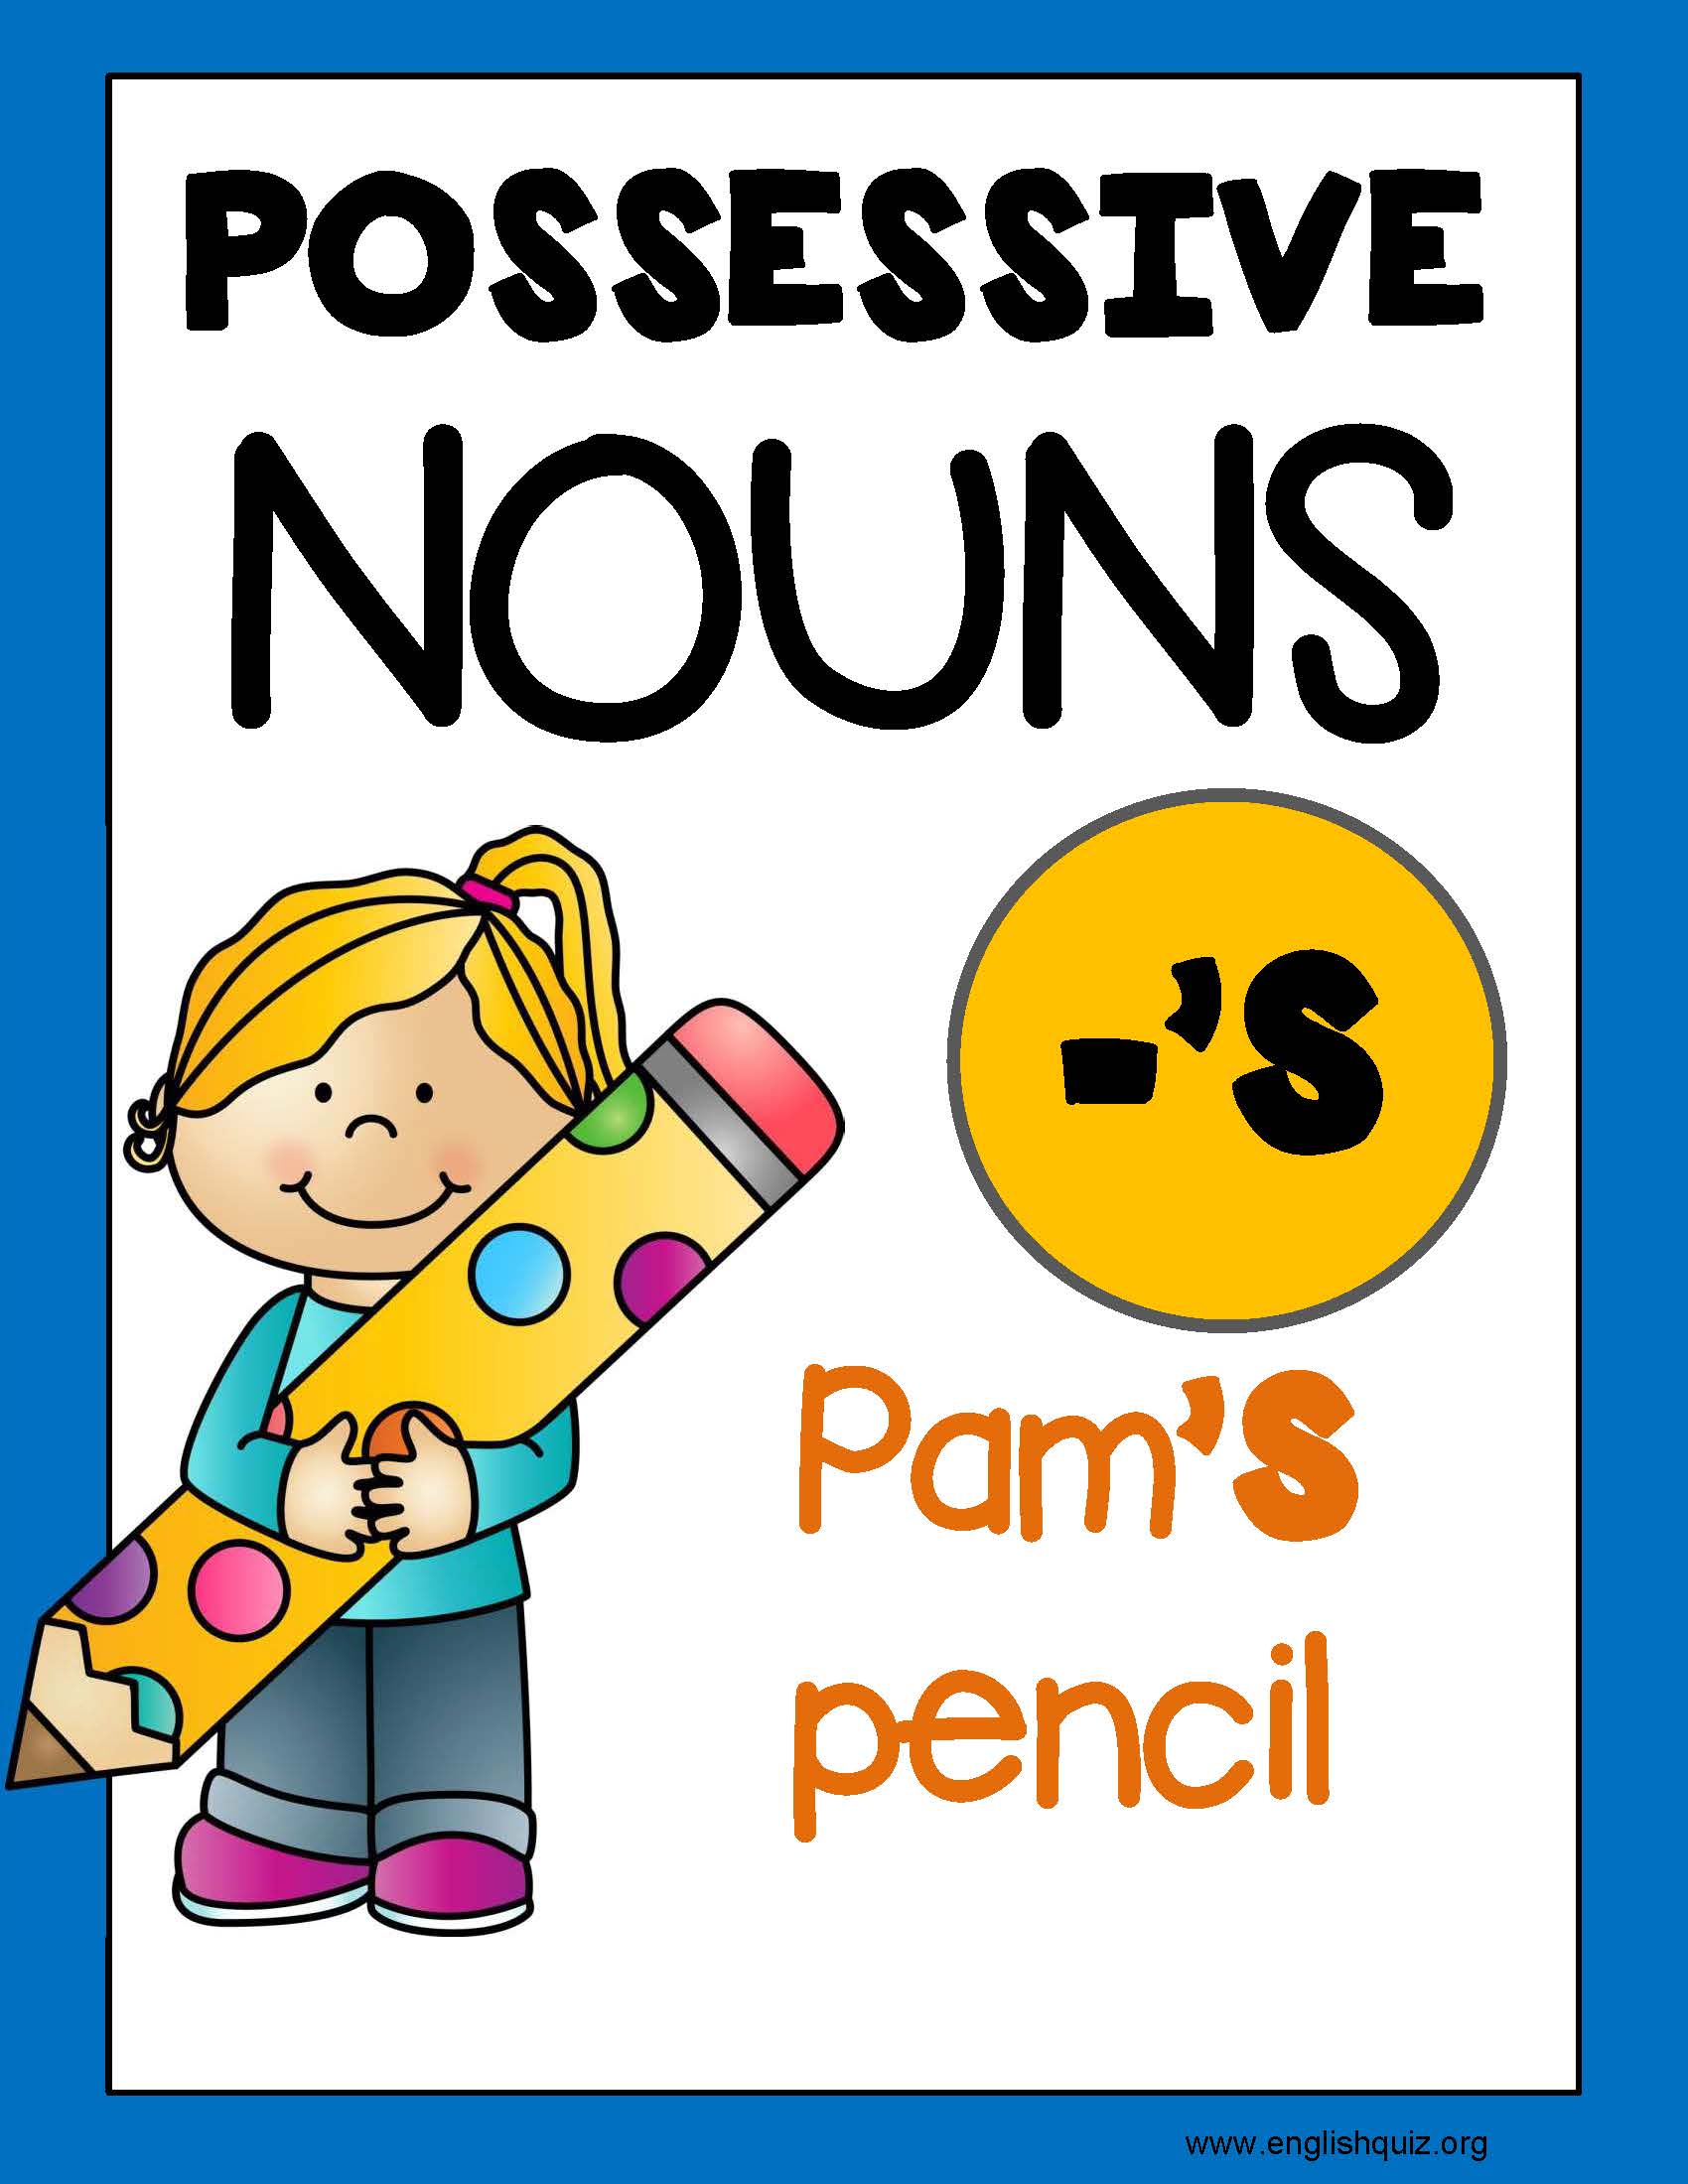 英語教材 所有代名詞 Possessive Nouns 練習 一 官方英文測驗題庫中心